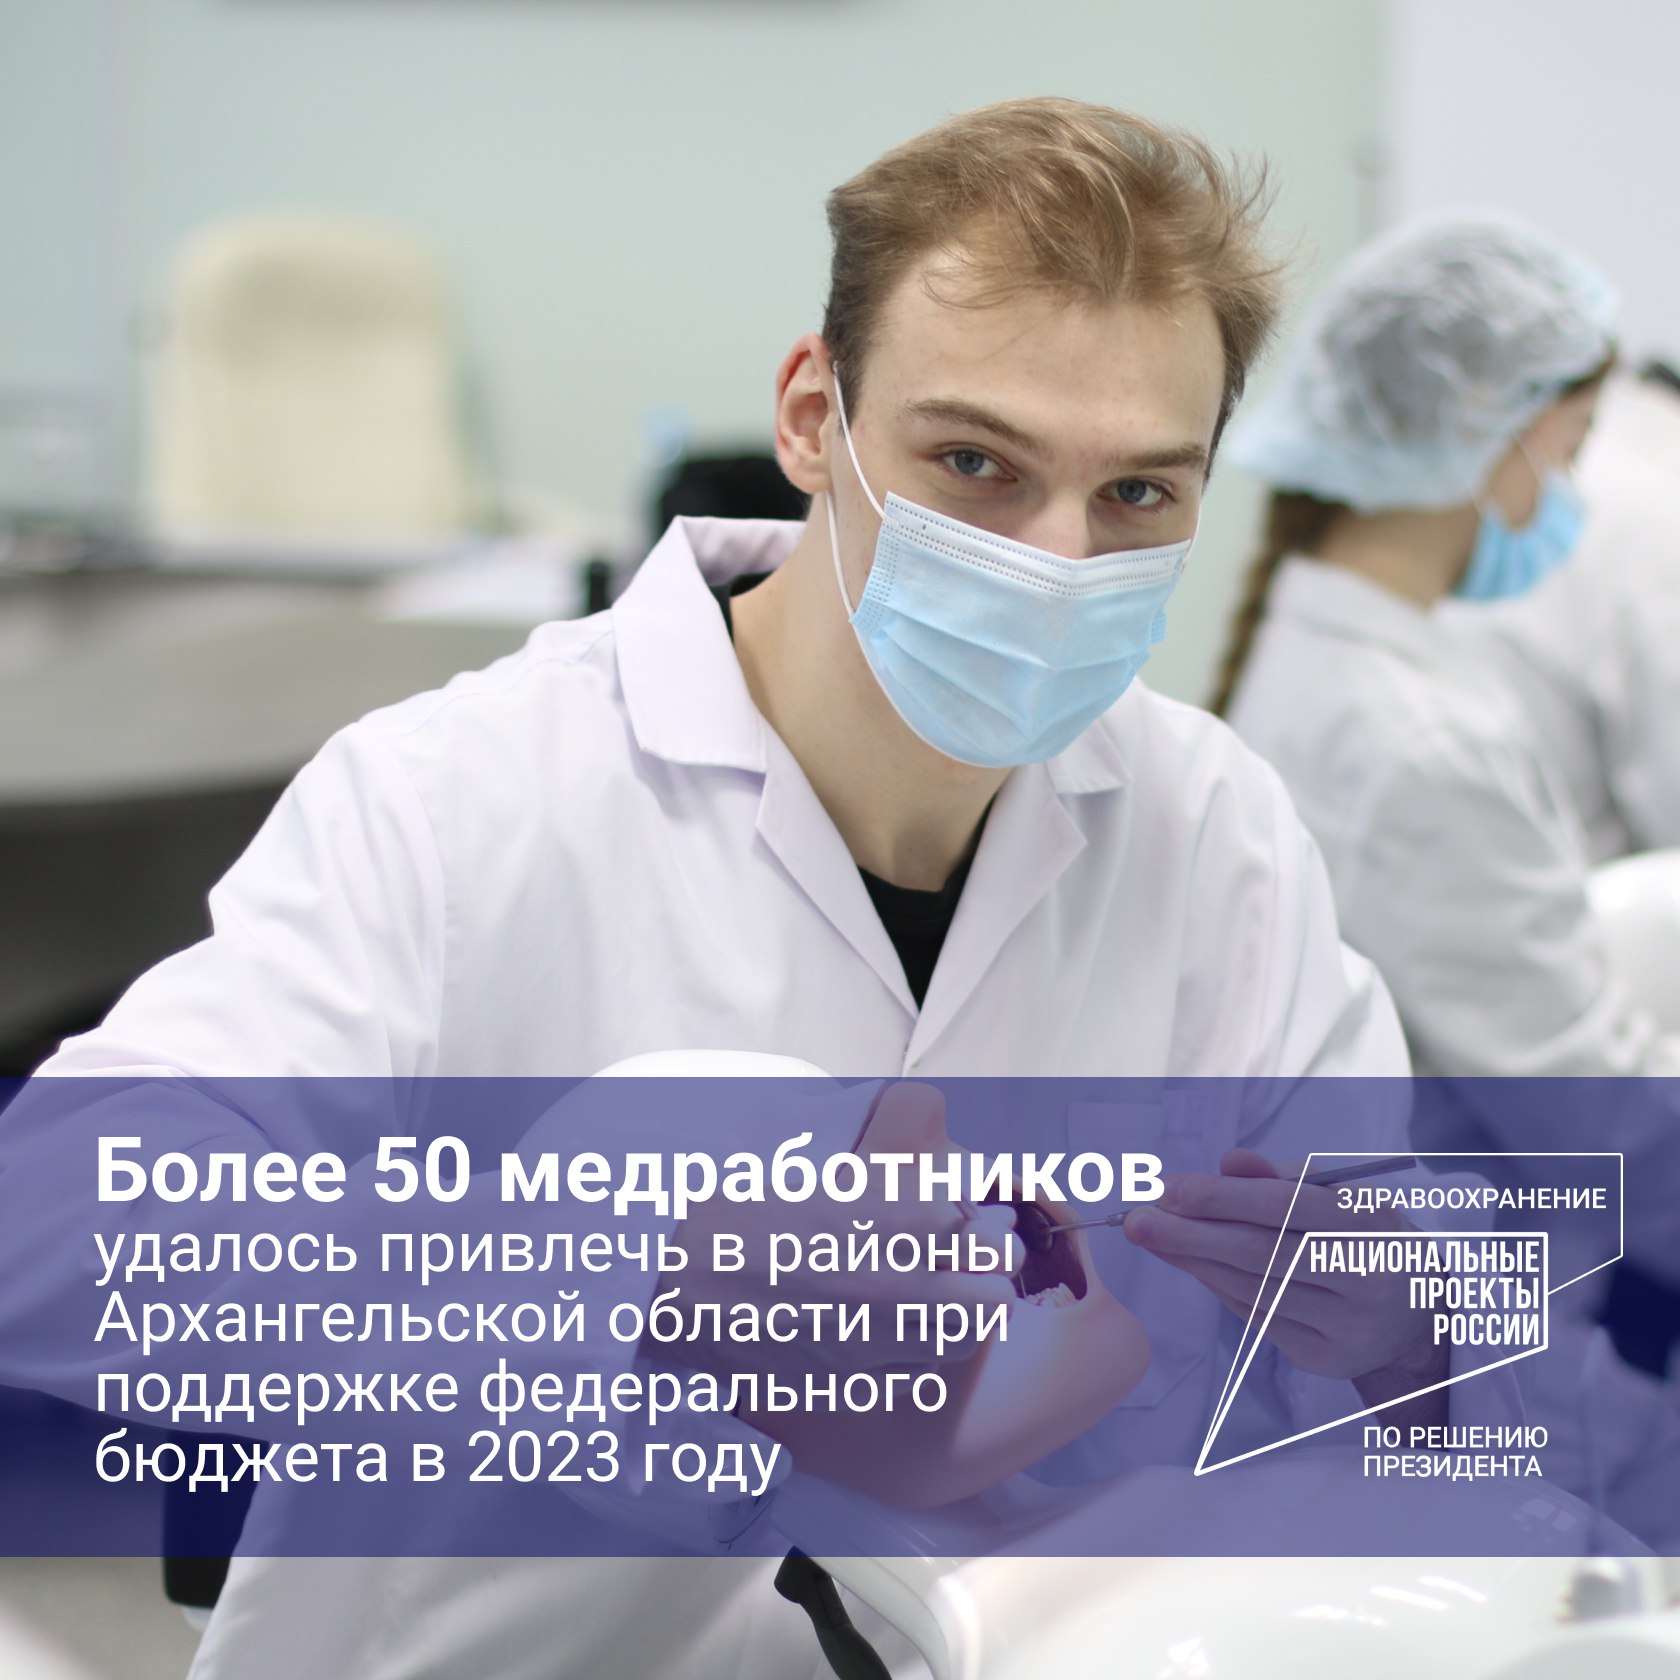 Архангельская область полностью выполнила план по привлечению медкадров в рамках федеральных проектов